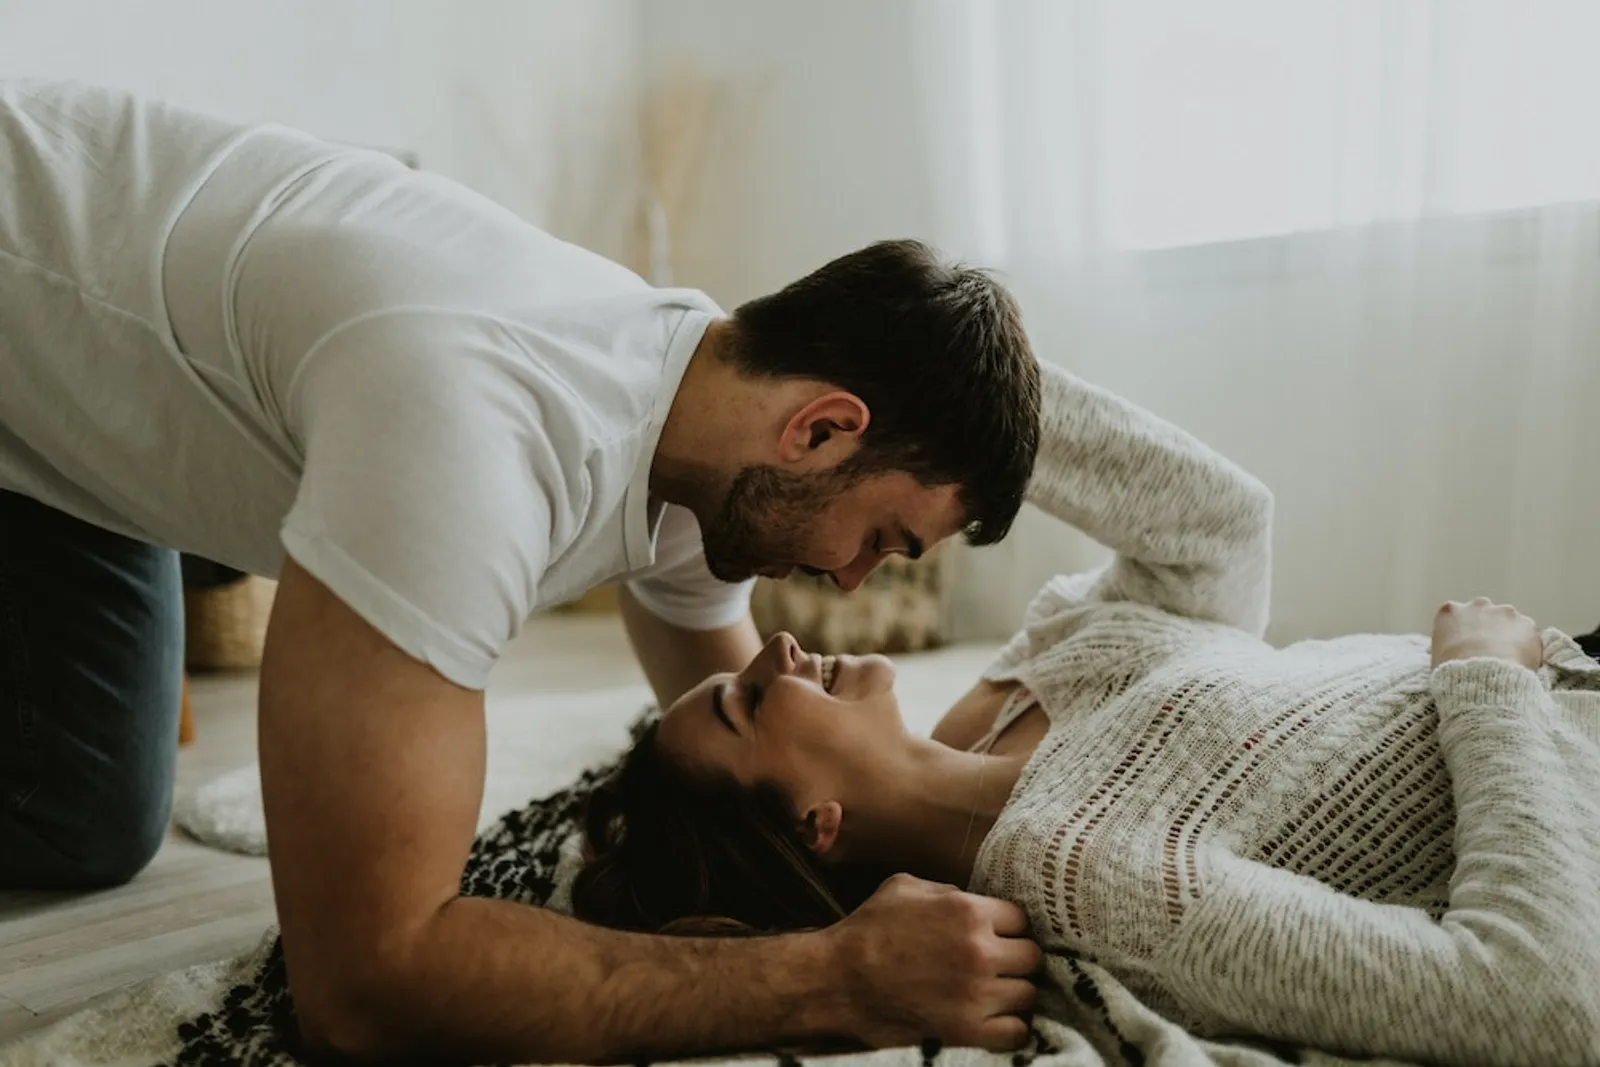 Jangan Diremehkan, Ini Lho 9 Manfaat Tidur Bersama Pasangan